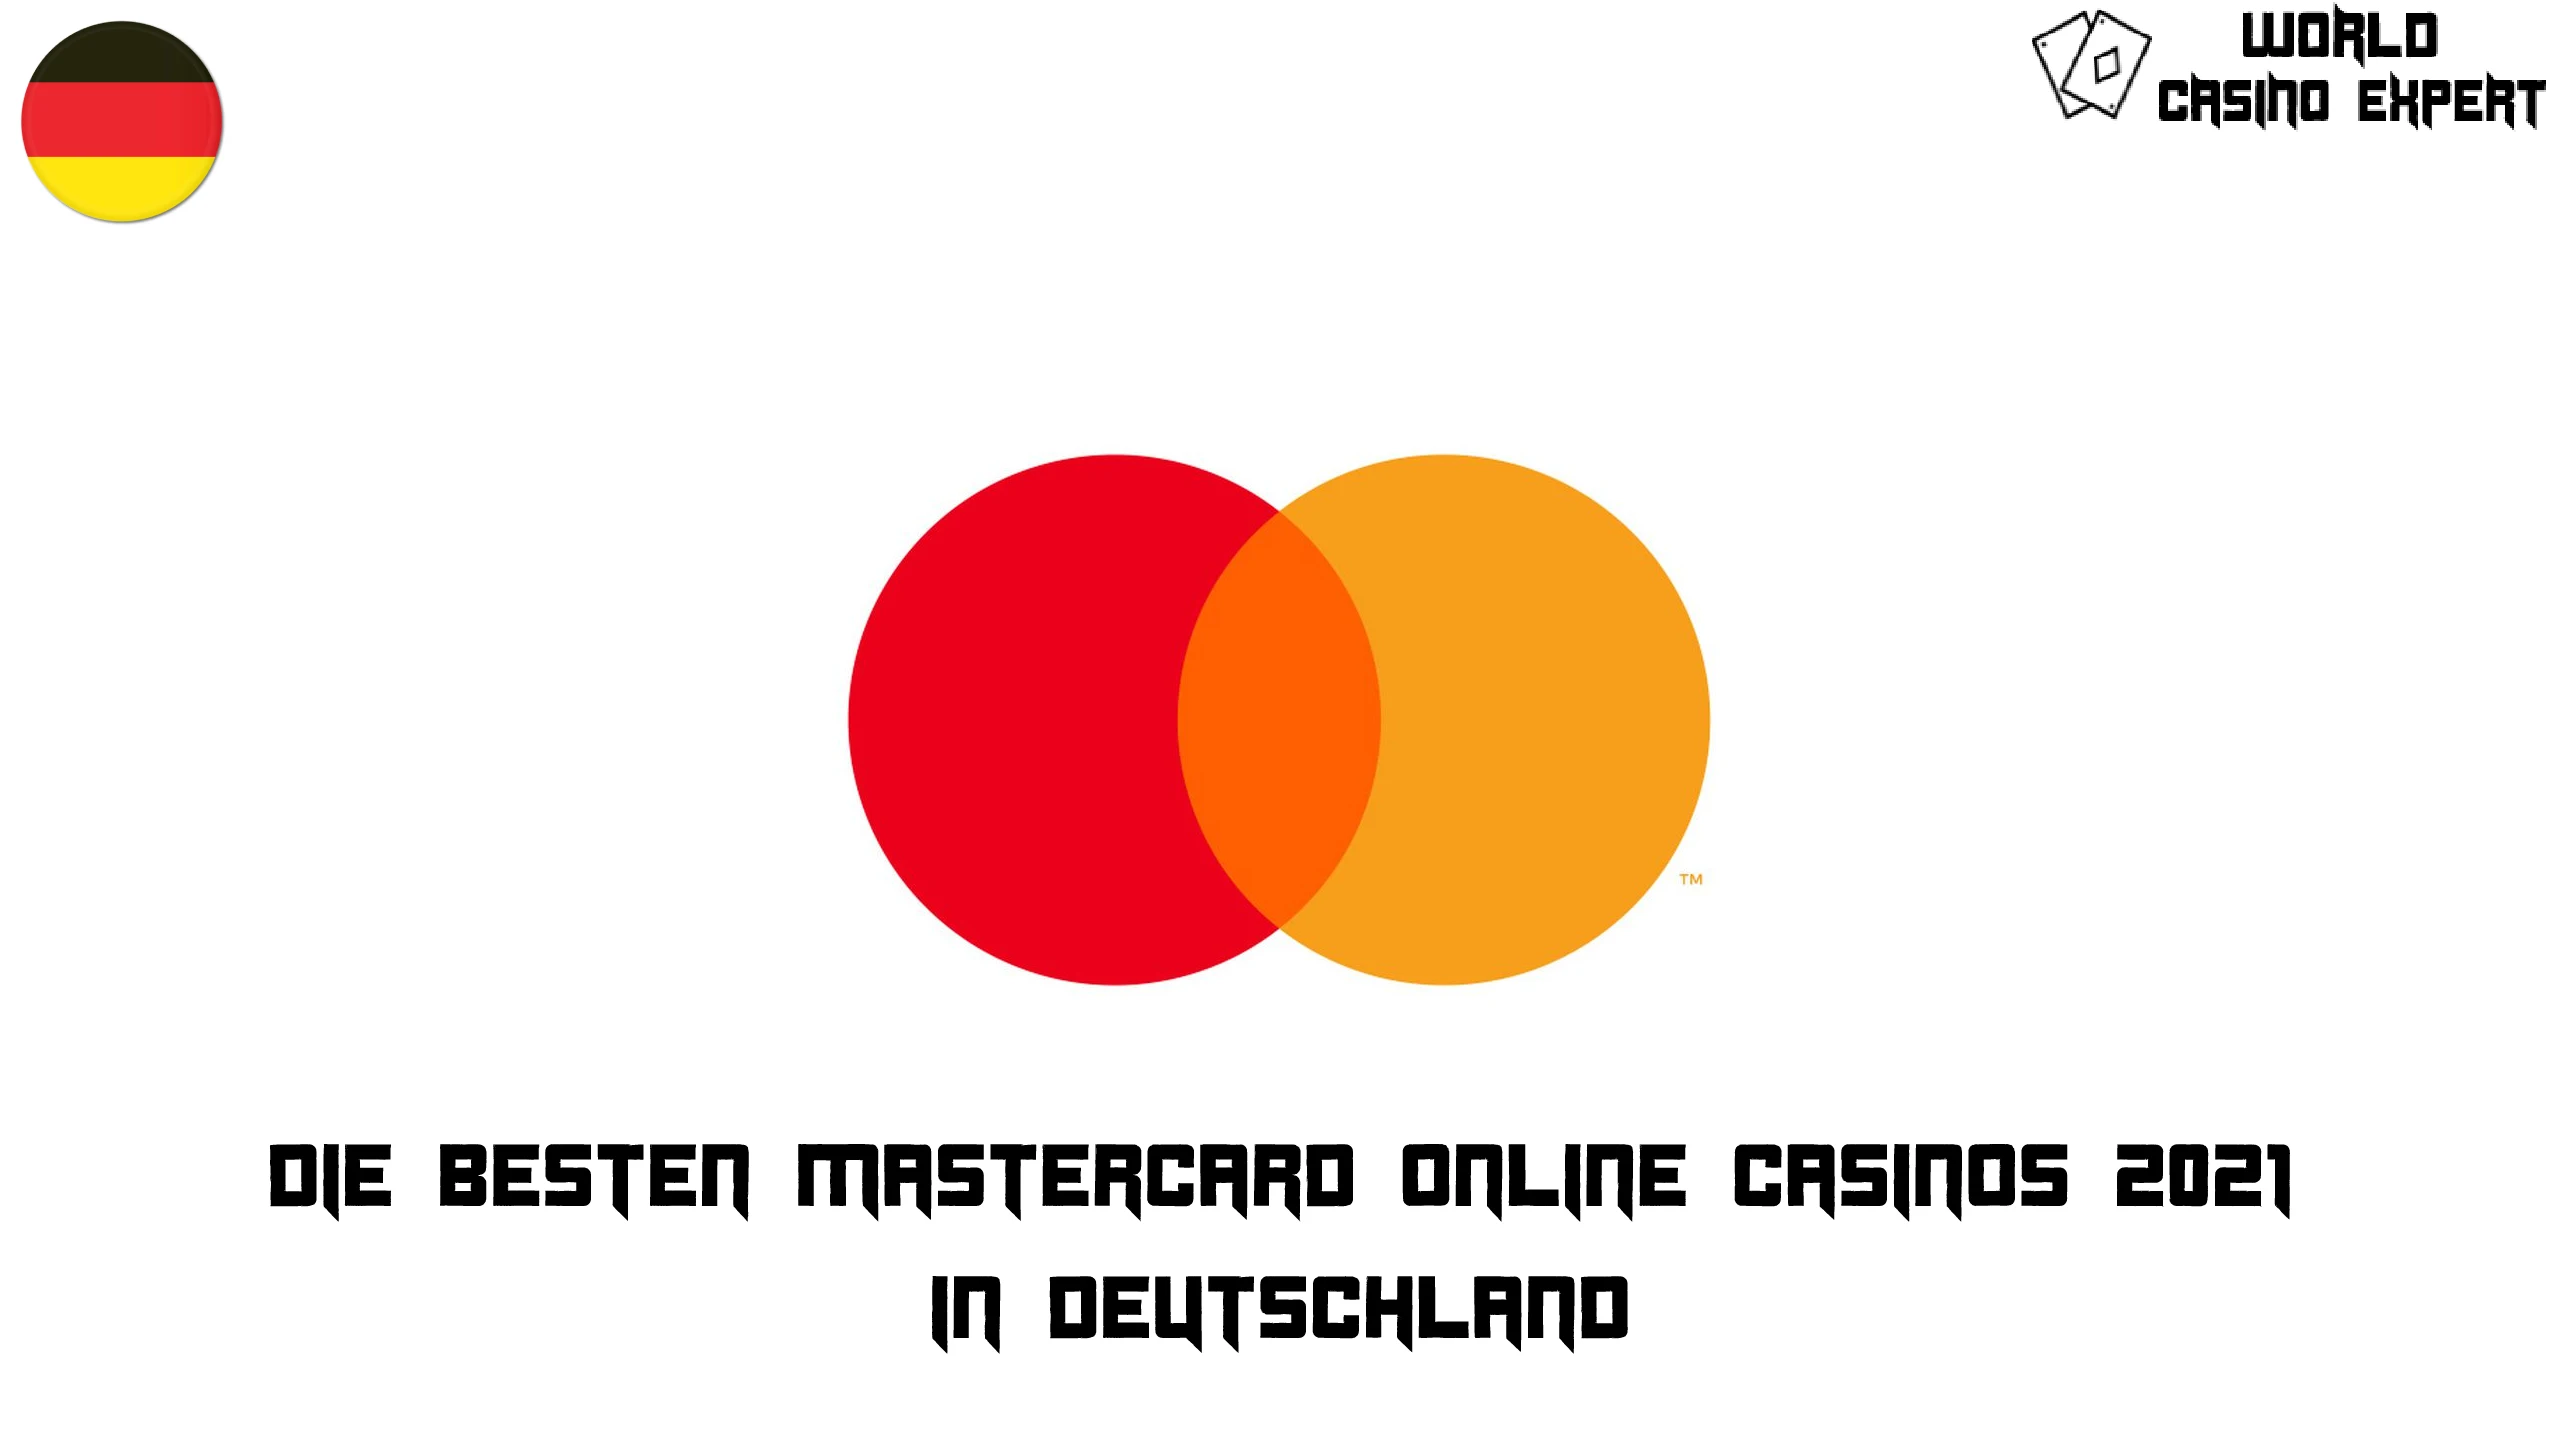 Die besten MasterCard Online Casinos 2021 | Deutschland World Casino Expert